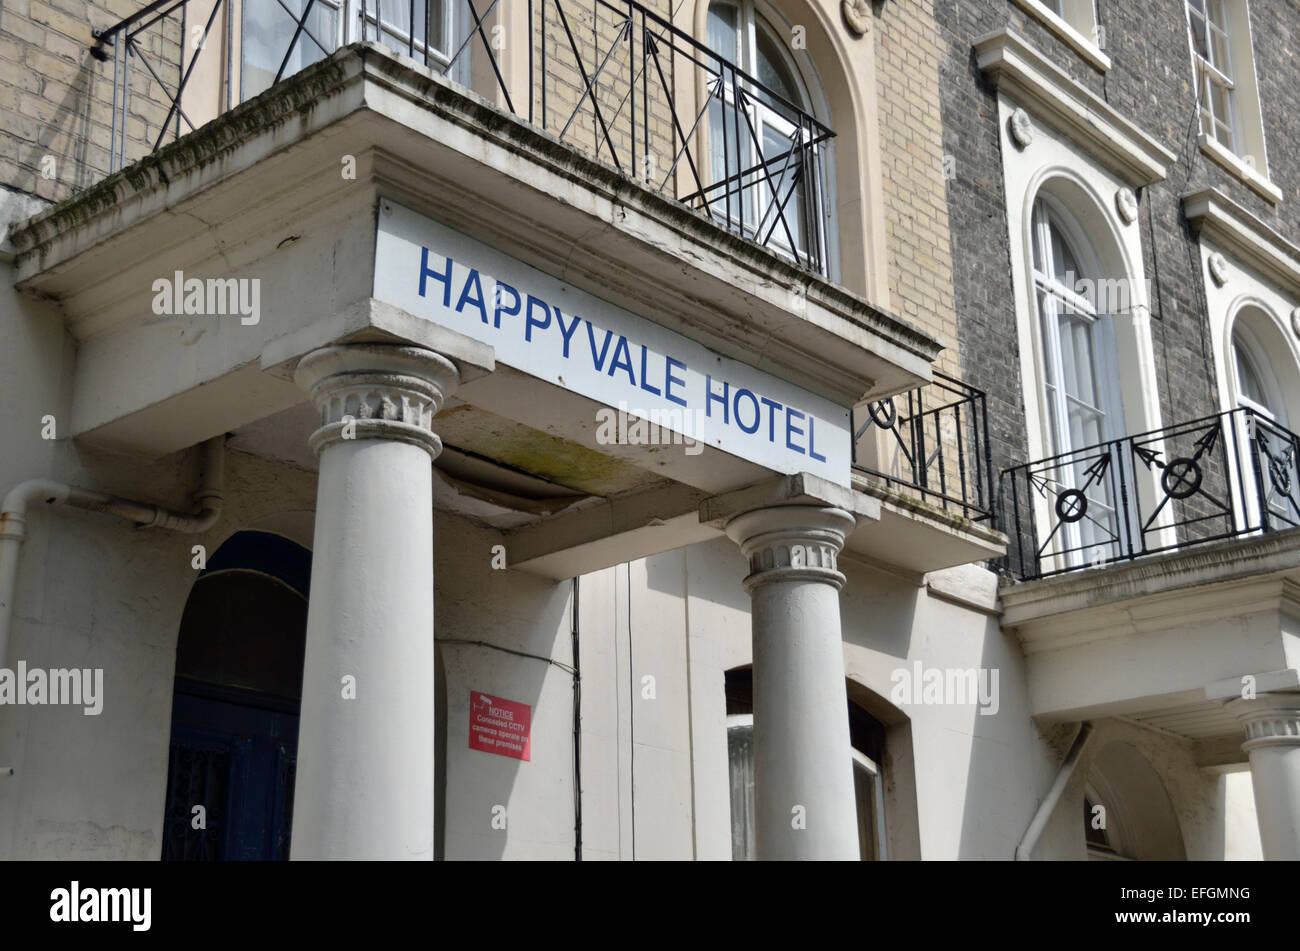 HappyVale dans l'Hôtel Mornington Crescent Harrington Square, London, UK. Banque D'Images